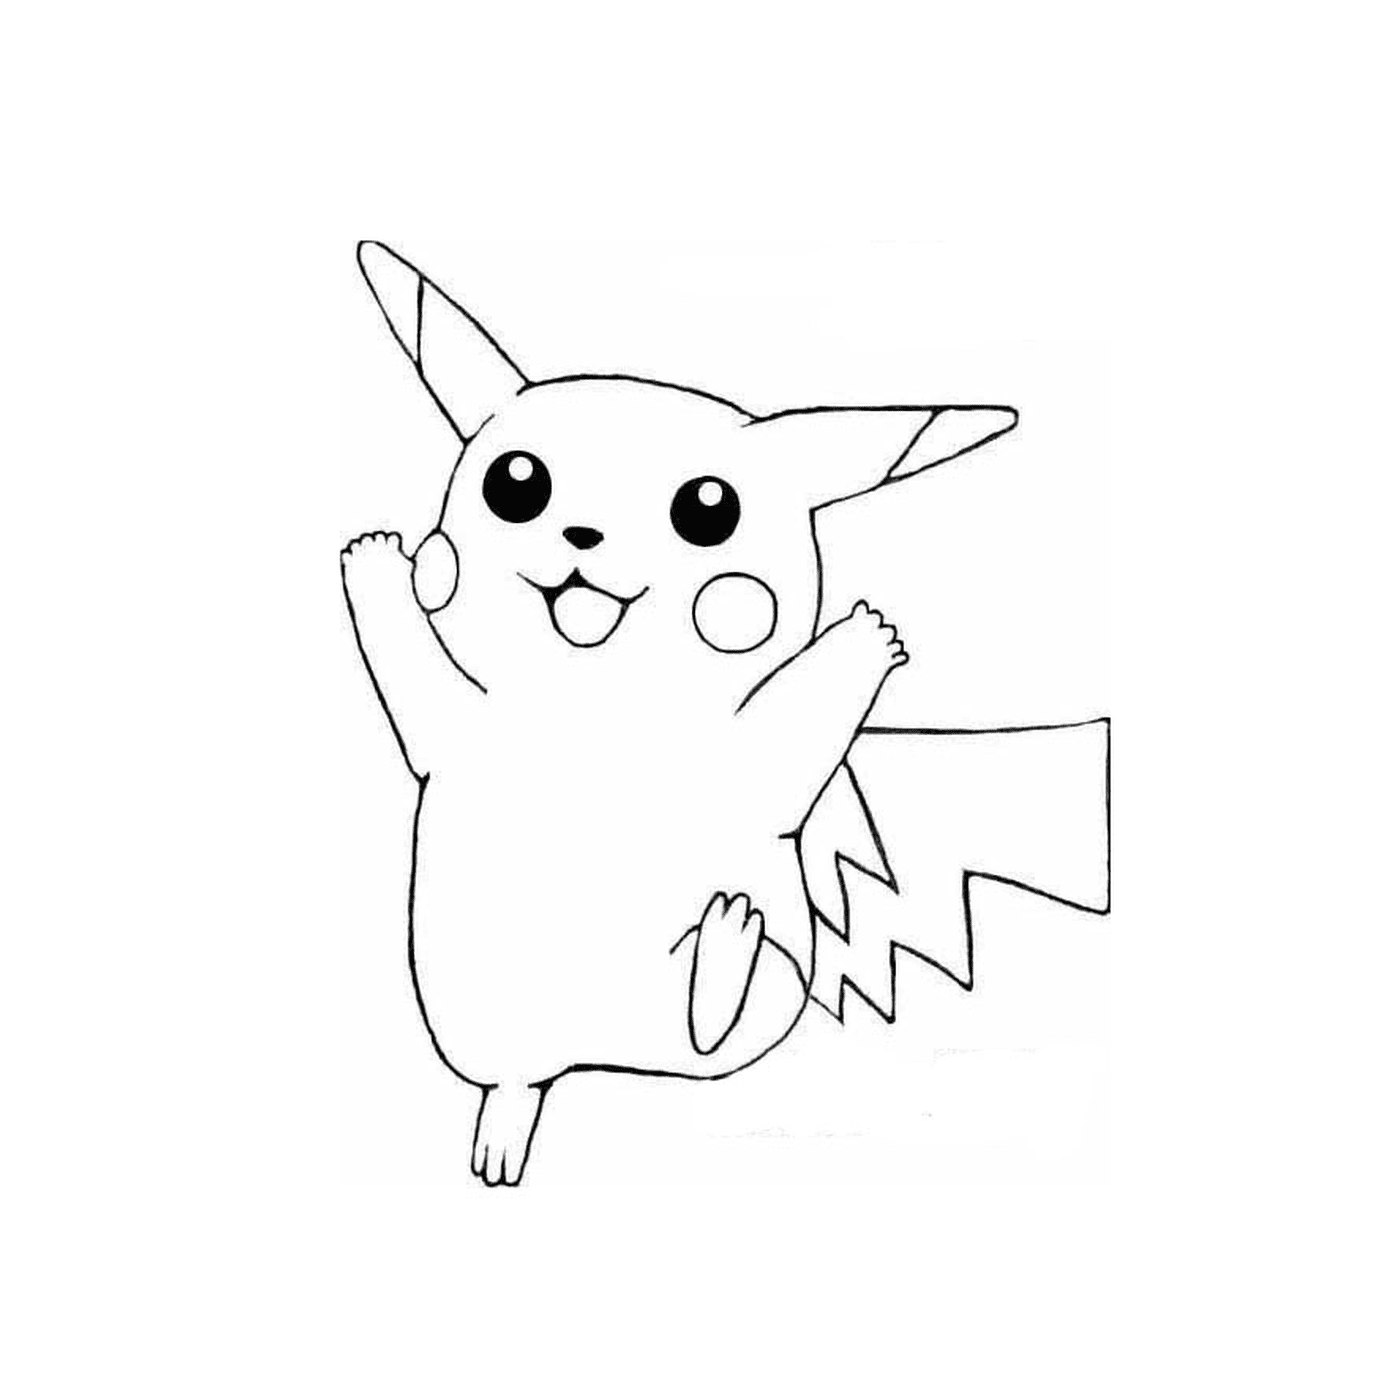  Pikachu in einfach zu zeichnender Version 